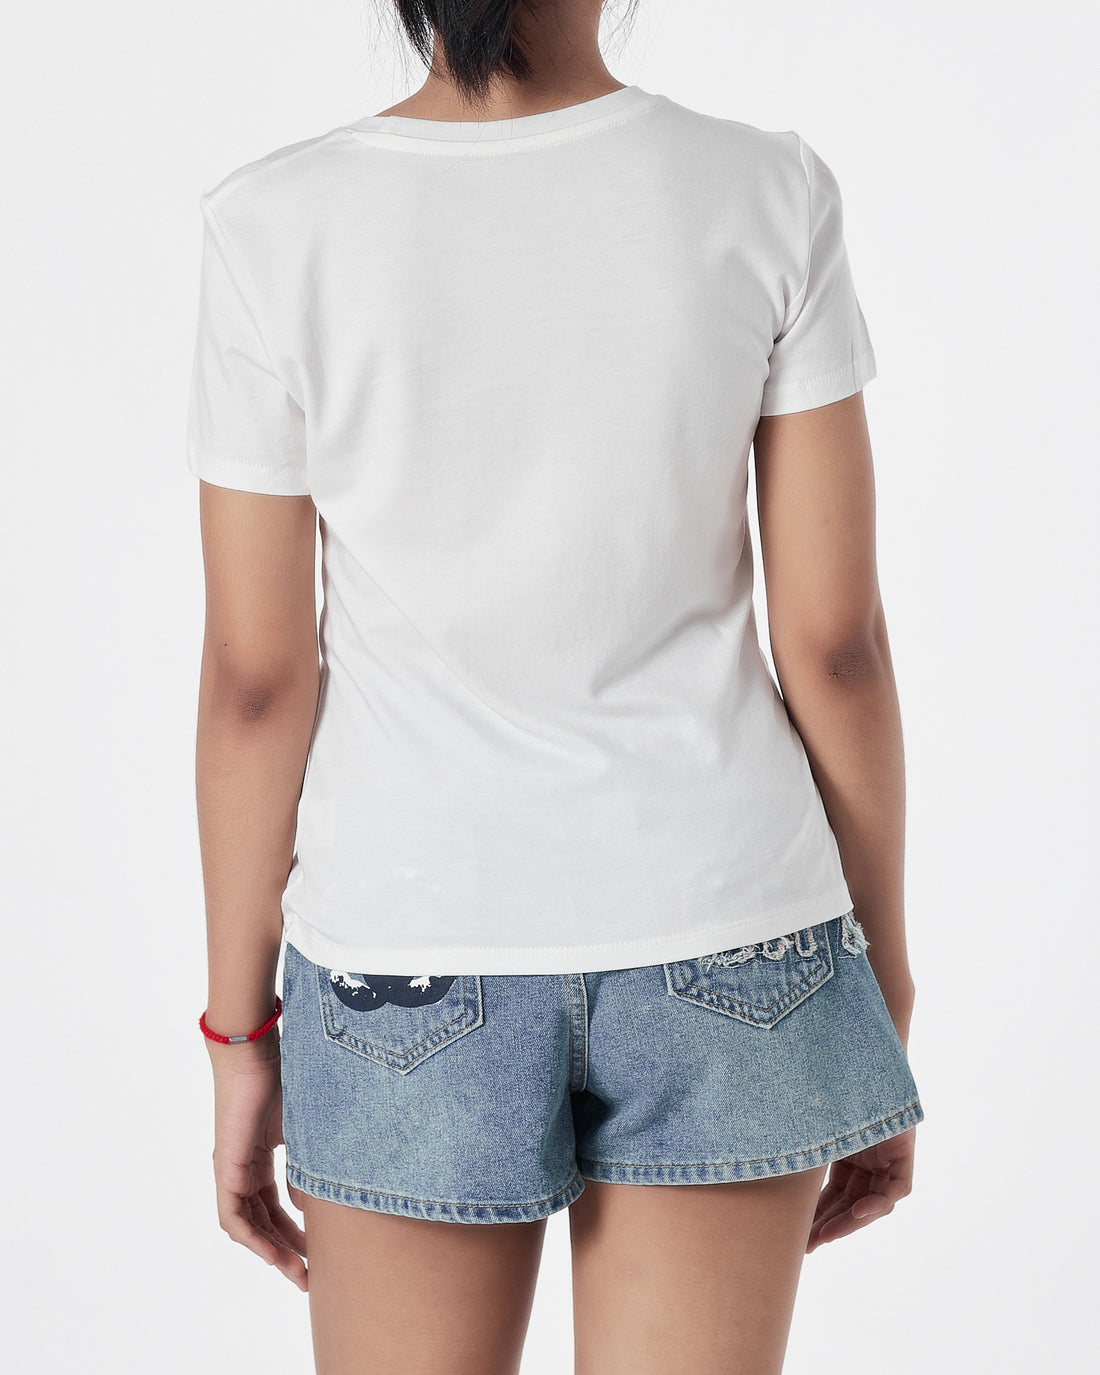 ALICE Lady White T-Shirt 12.90